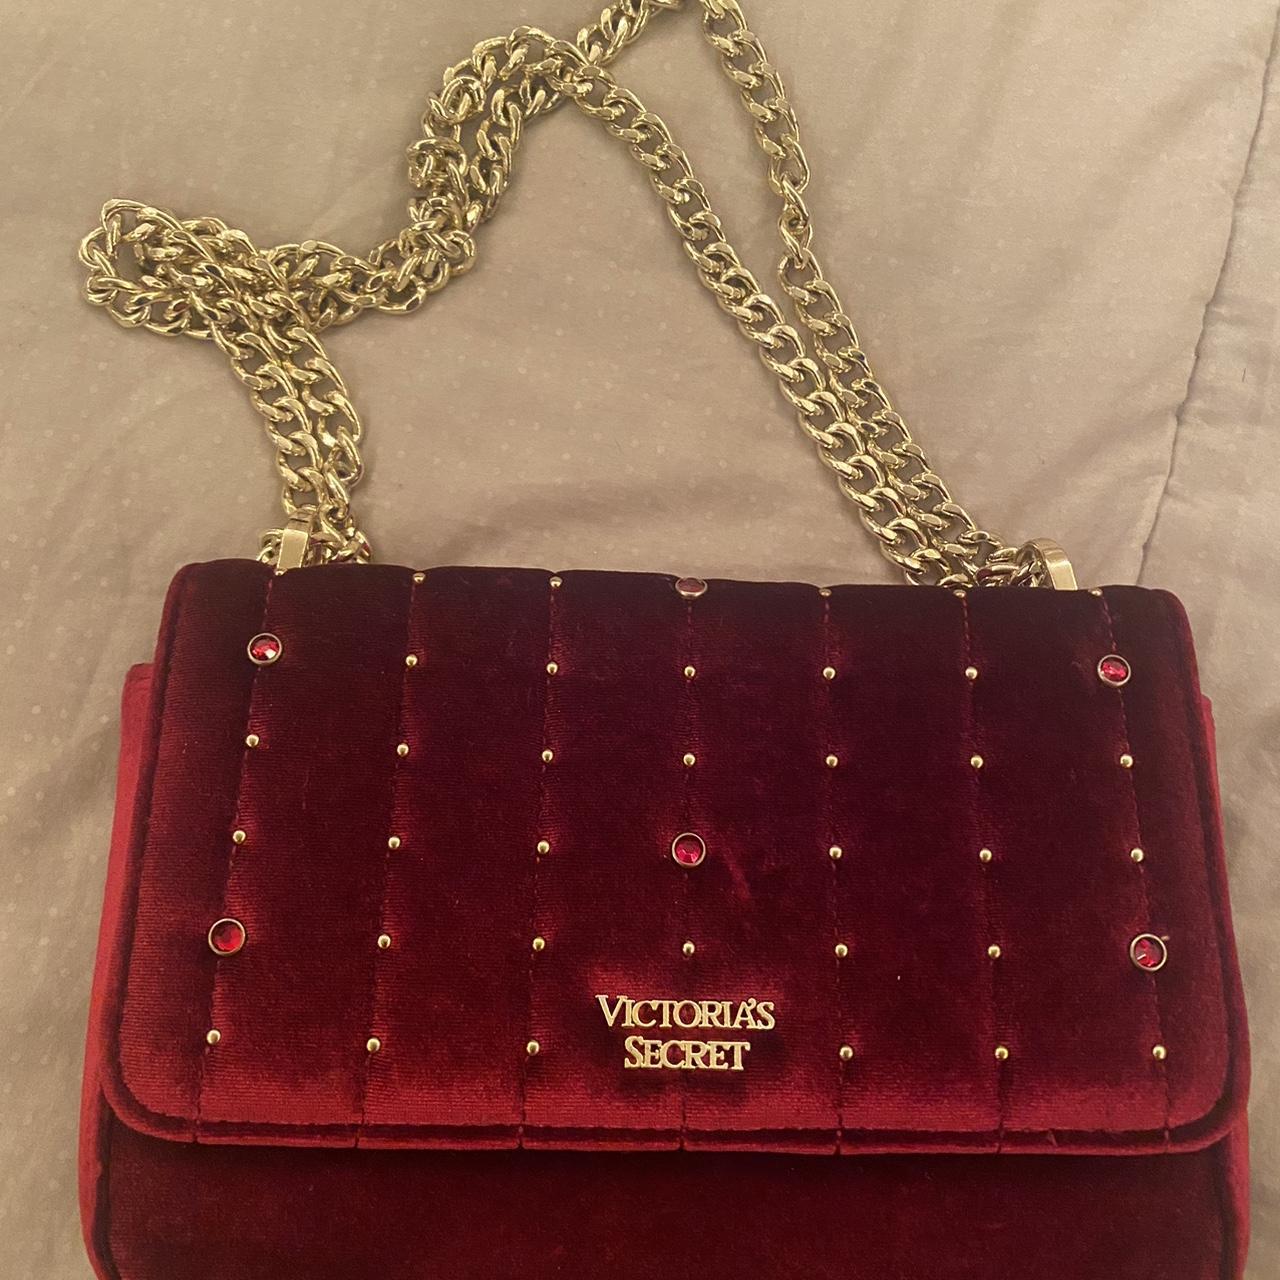 Victoria's secret dark red velvet purse with golden - Depop